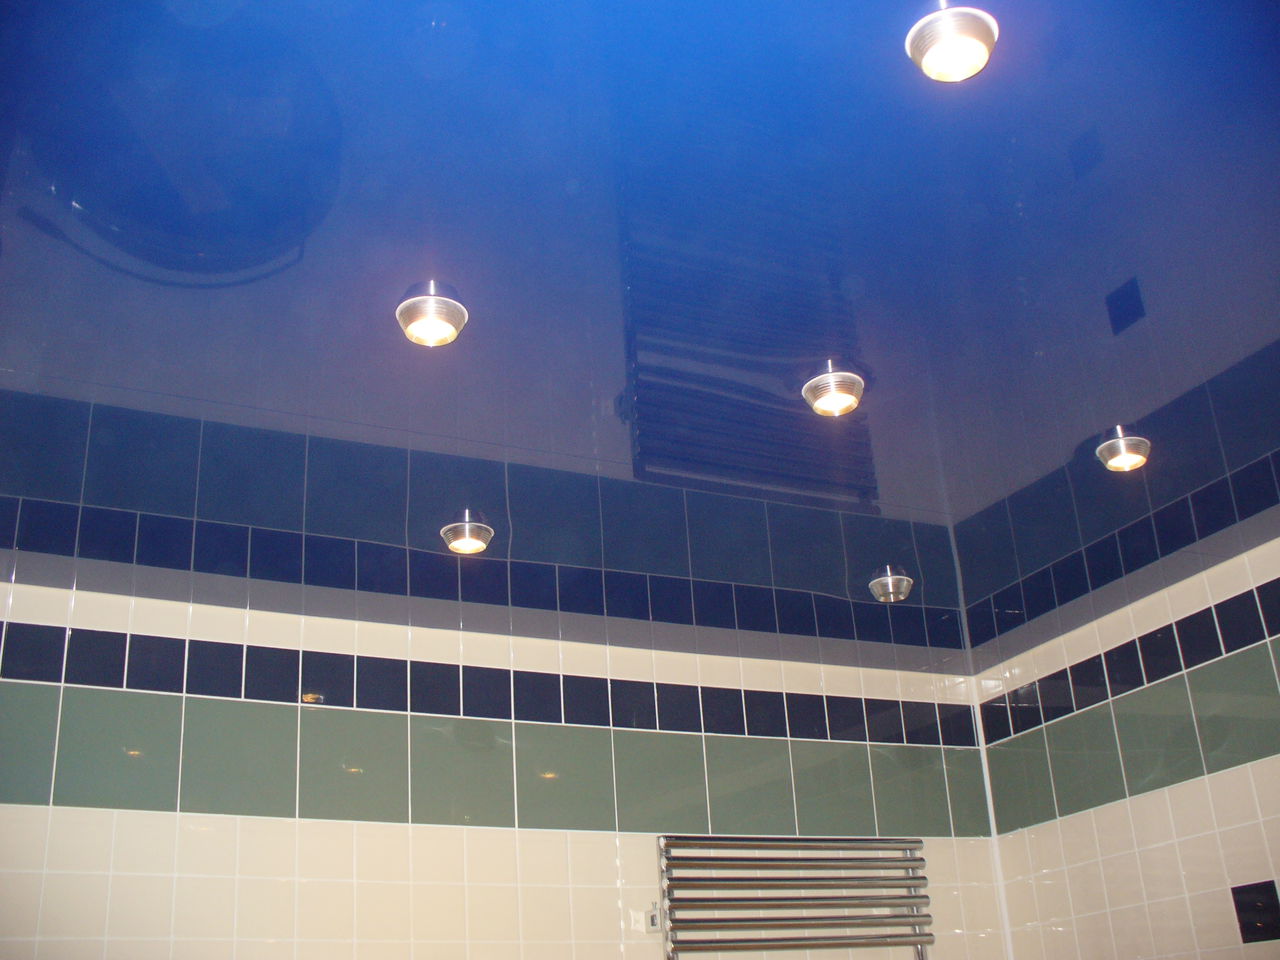 фото глянцевых натяжных потолков в ванной